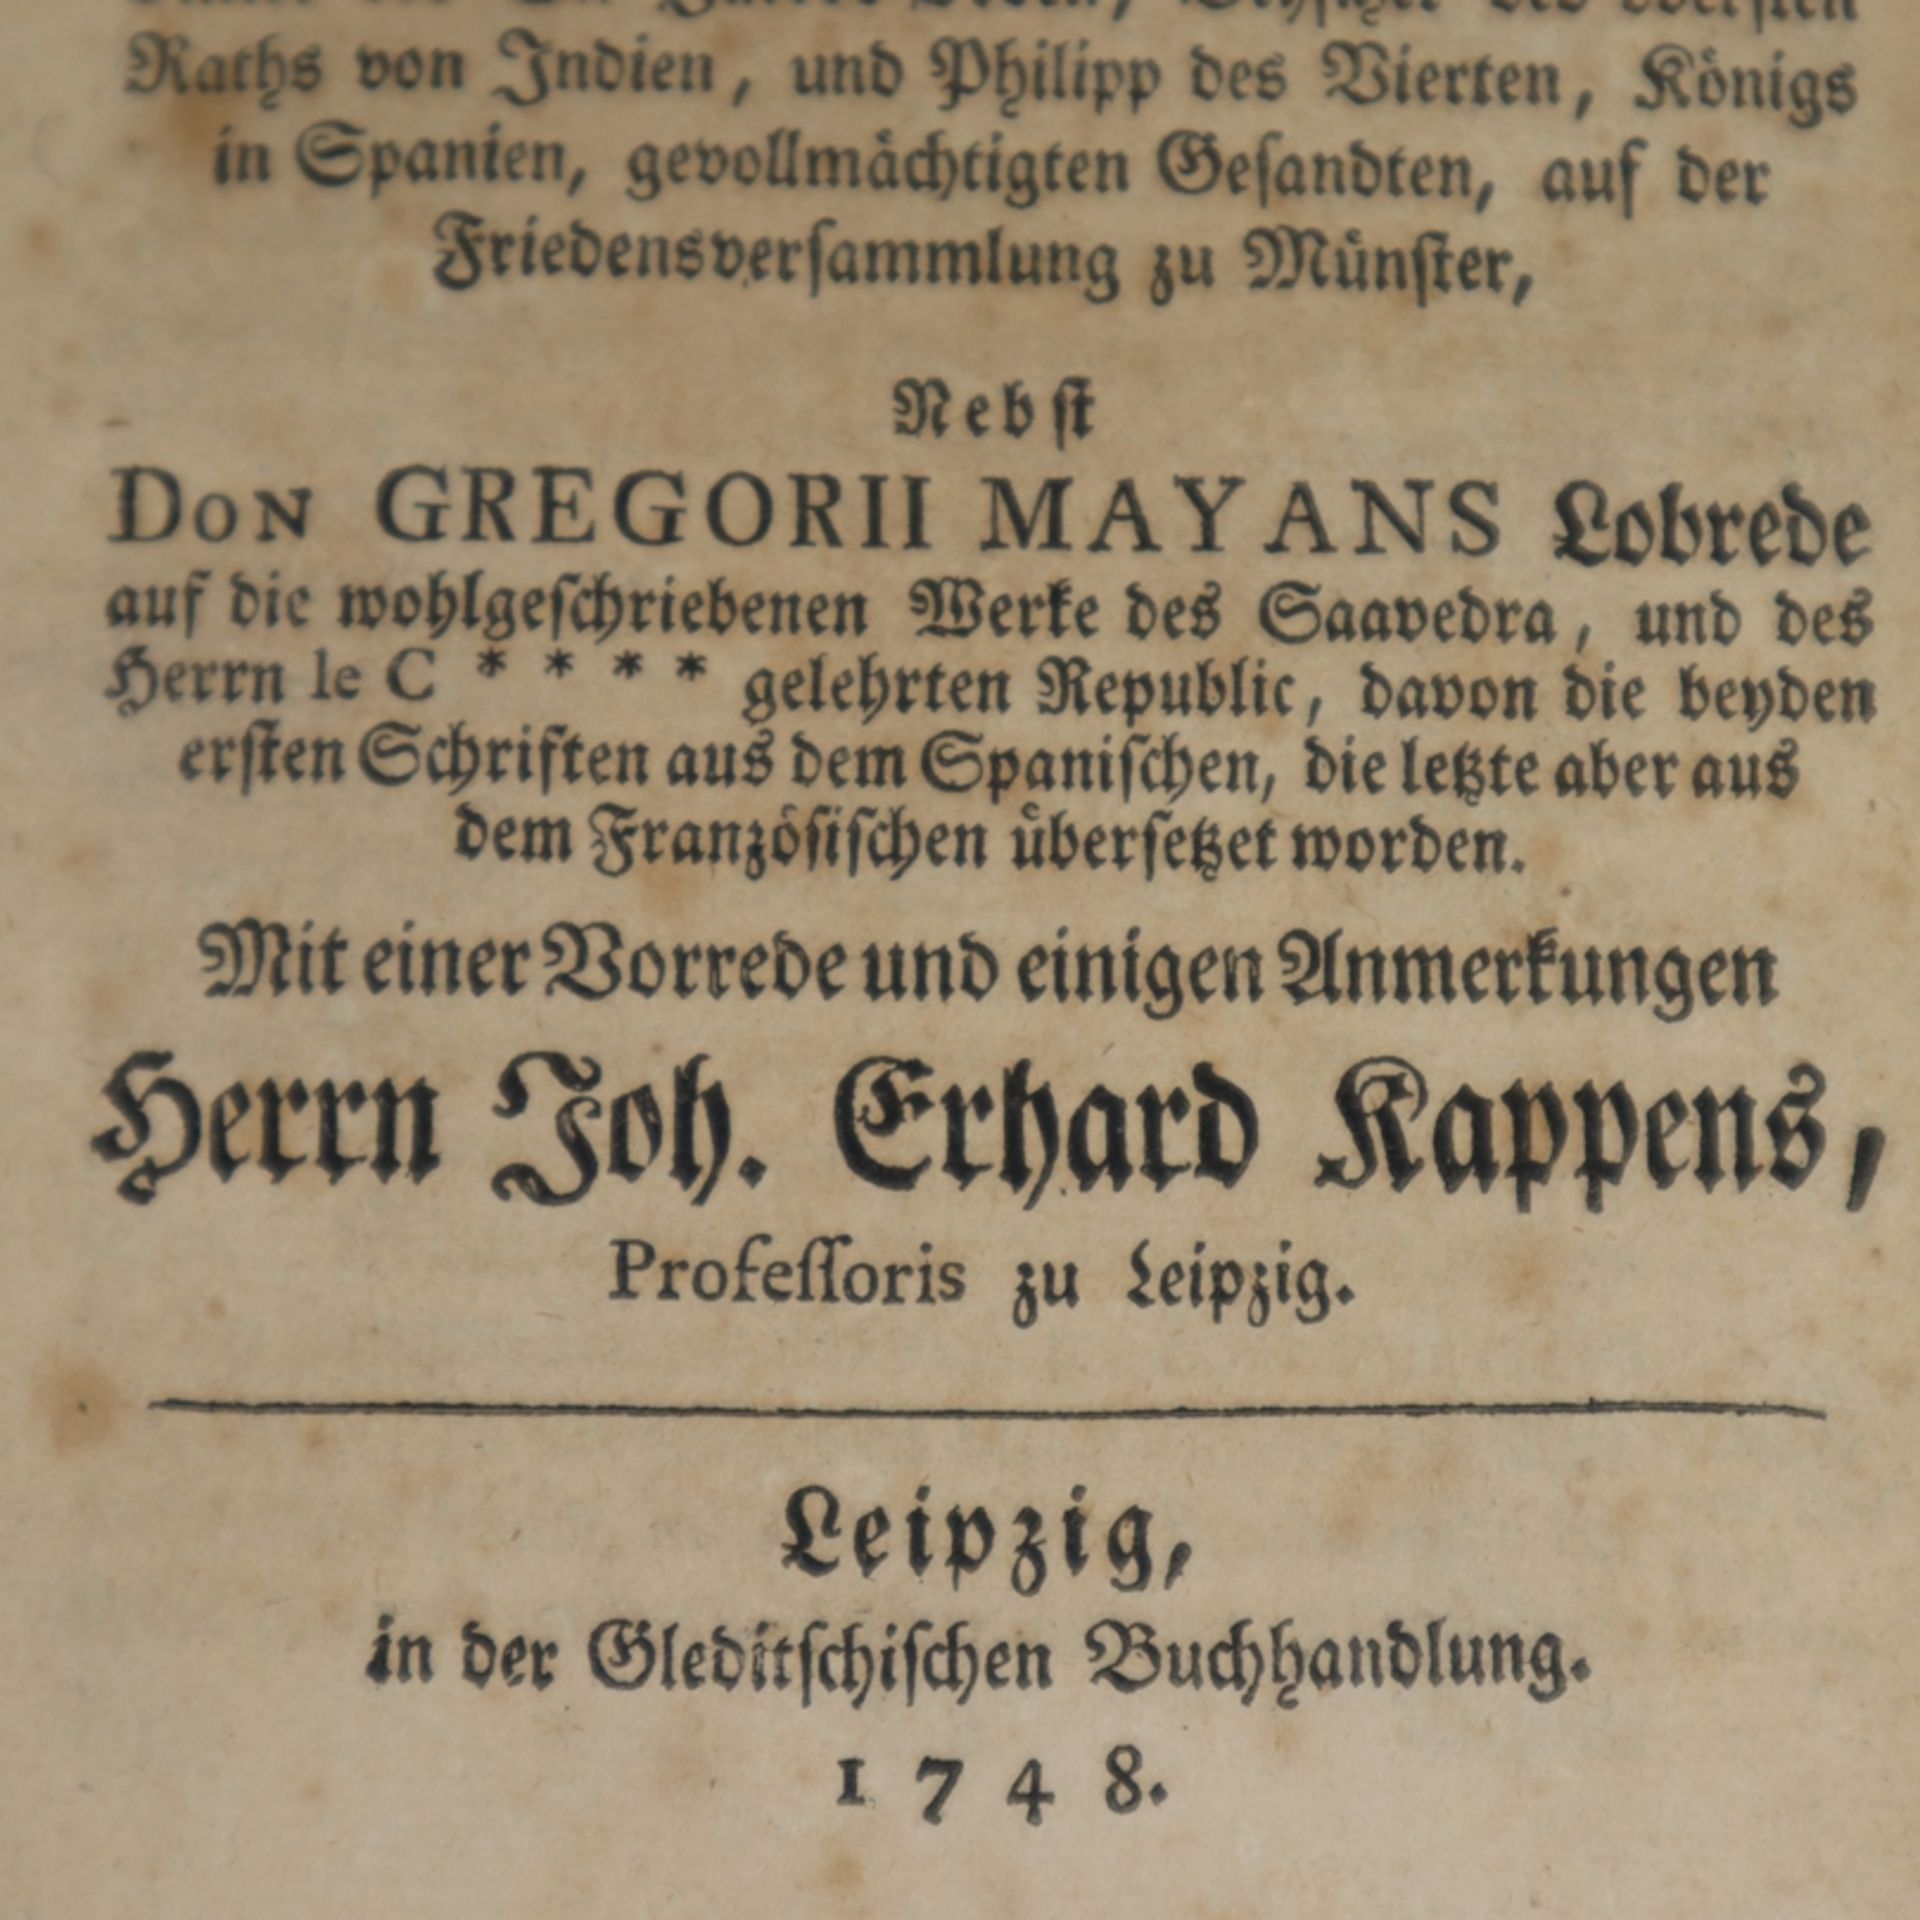 Saavedra, Diego - Die Gelehrte Republic, Gleditschische Buchhandlung, Leipzig 1748, 112, CXII, - Bild 2 aus 6